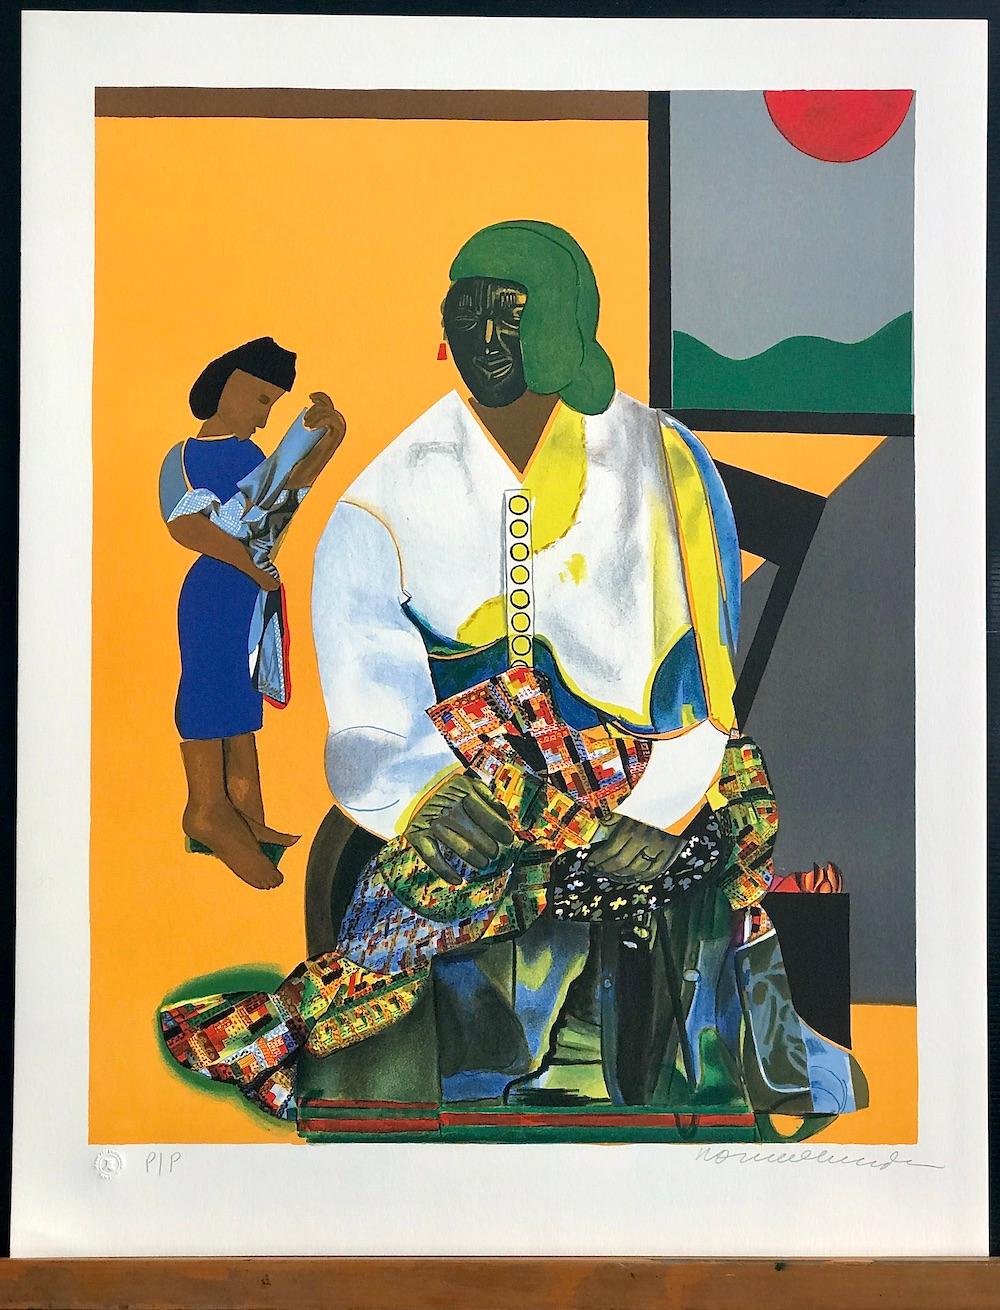 MECKLENBURG AUTUMN ist eine limitierte Original-Farblithografie des bekannten afroamerikanischen Künstlers Romare Bearden, gedruckt in traditioneller Handlithografie auf Arches-Papier, 100% säurefrei, in einer Auflage von 175 Stück. Fast